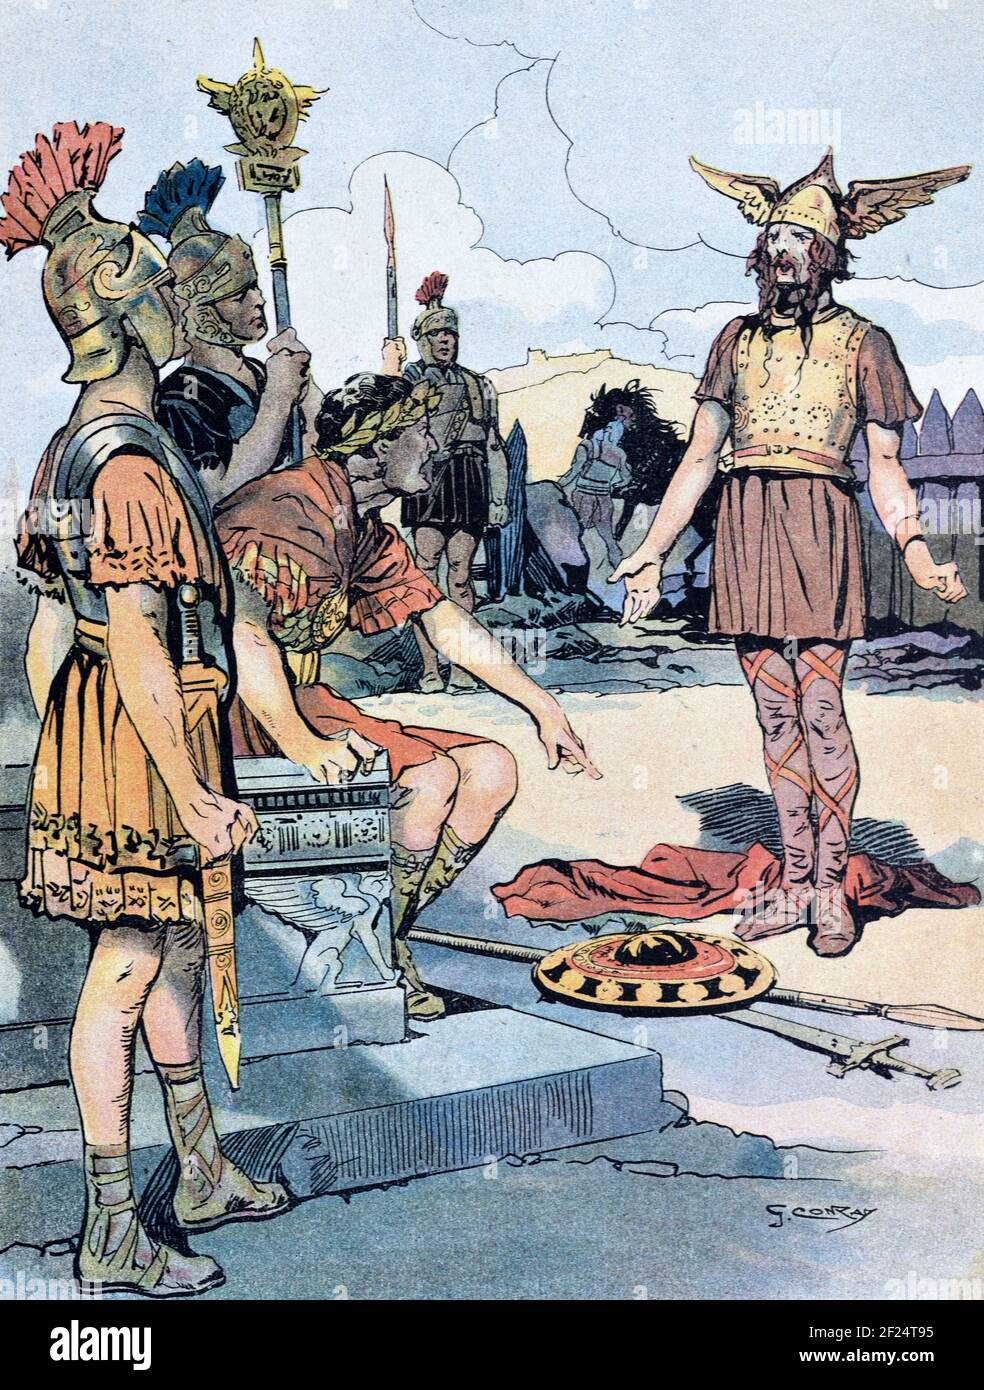 Vercingetorix (c82BC-46BC) soumet ou cède à Julius Caesar & the Romans après la bataille décisive d'Alésia, une victoire pour les Romains, en 52BC, qui a été la fin des guerres galloises (58BC-52BC). Illustration ancienne c1940 Banque D'Images